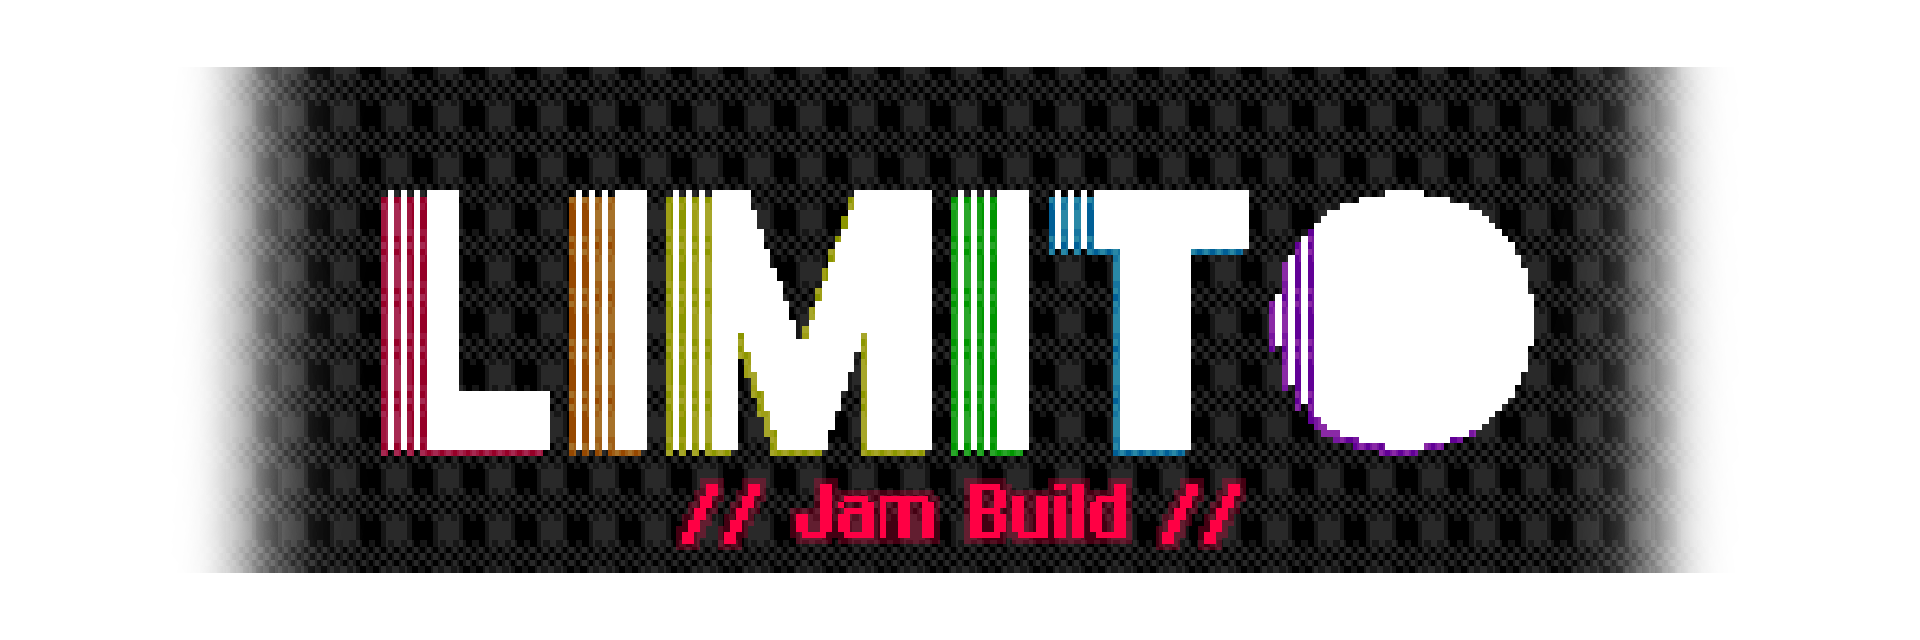 LIMITO (Jam Build)